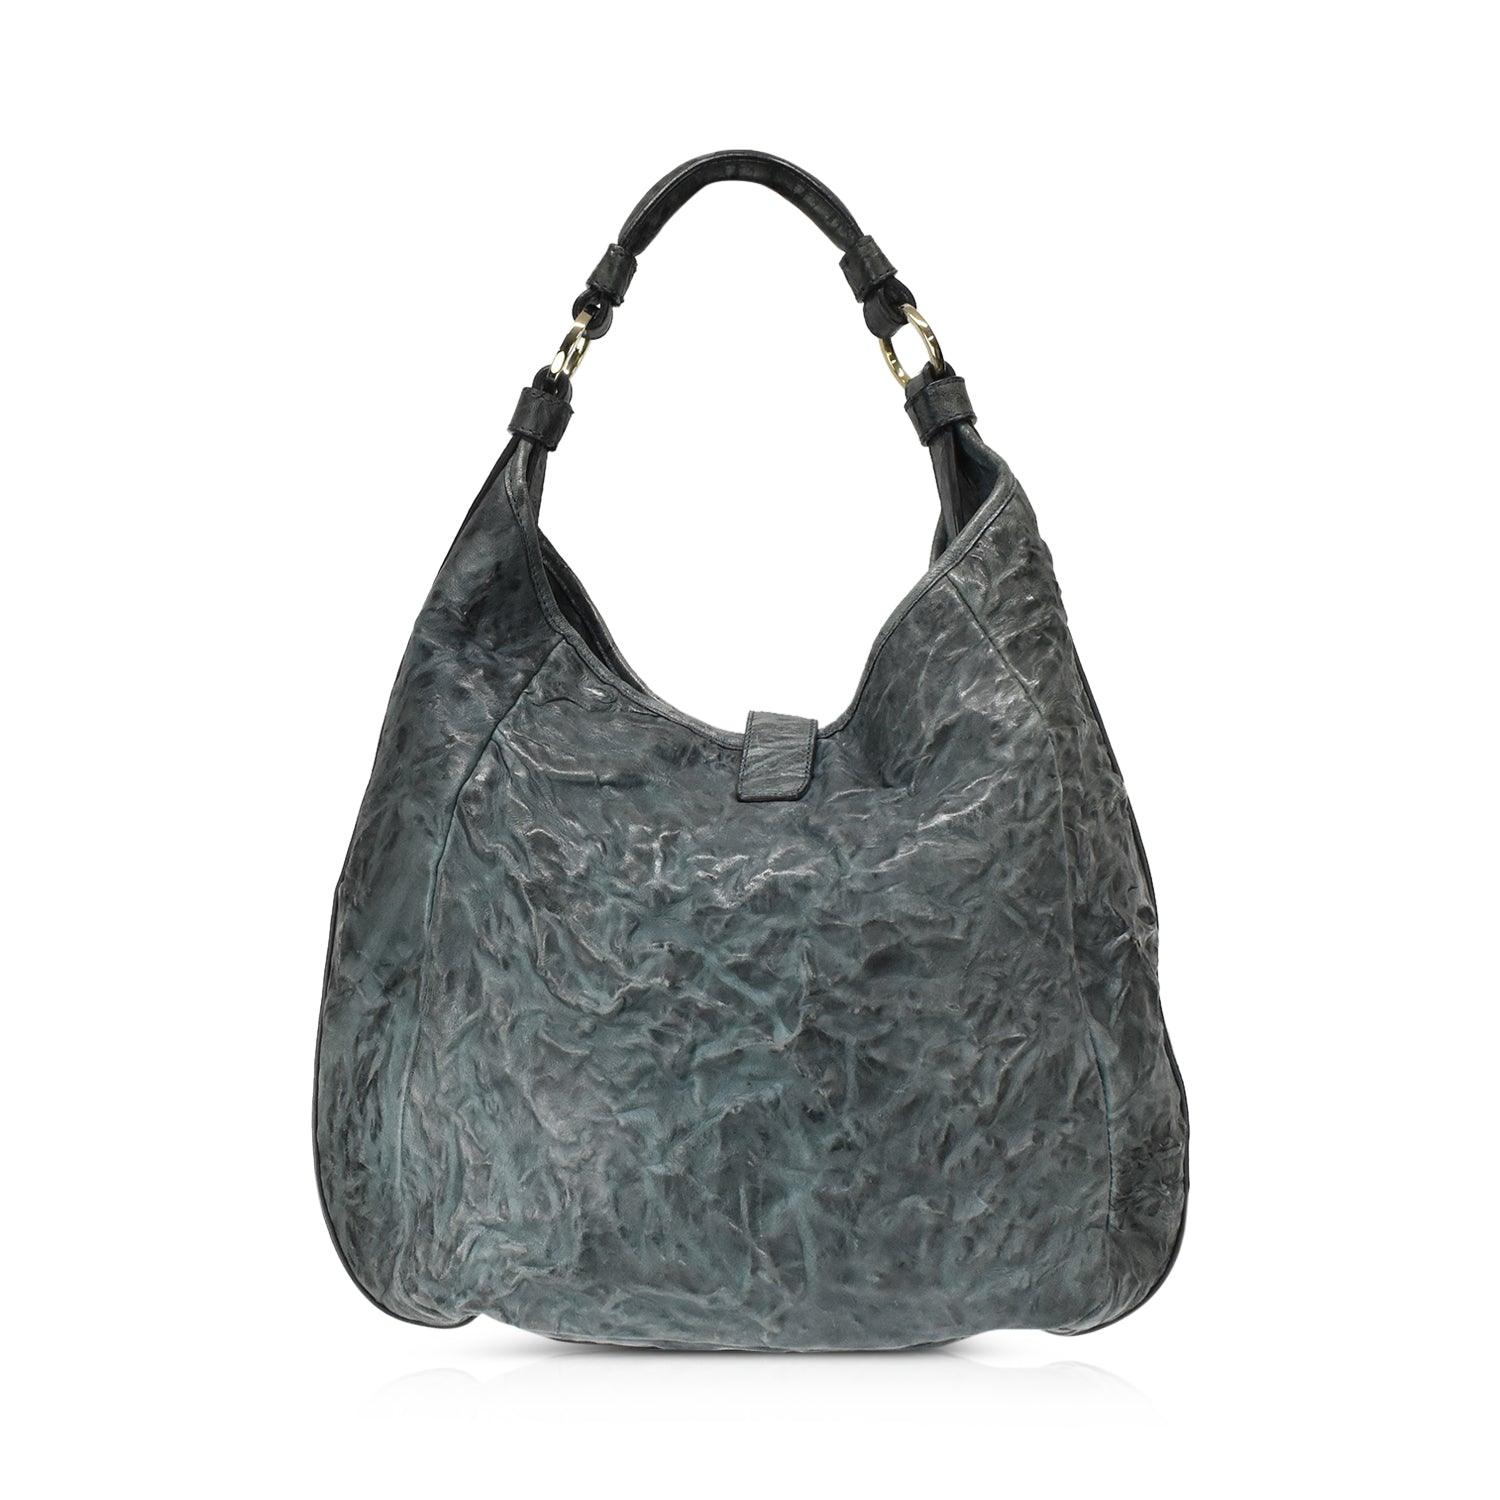 Givenchy Handbag - Fashionably Yours